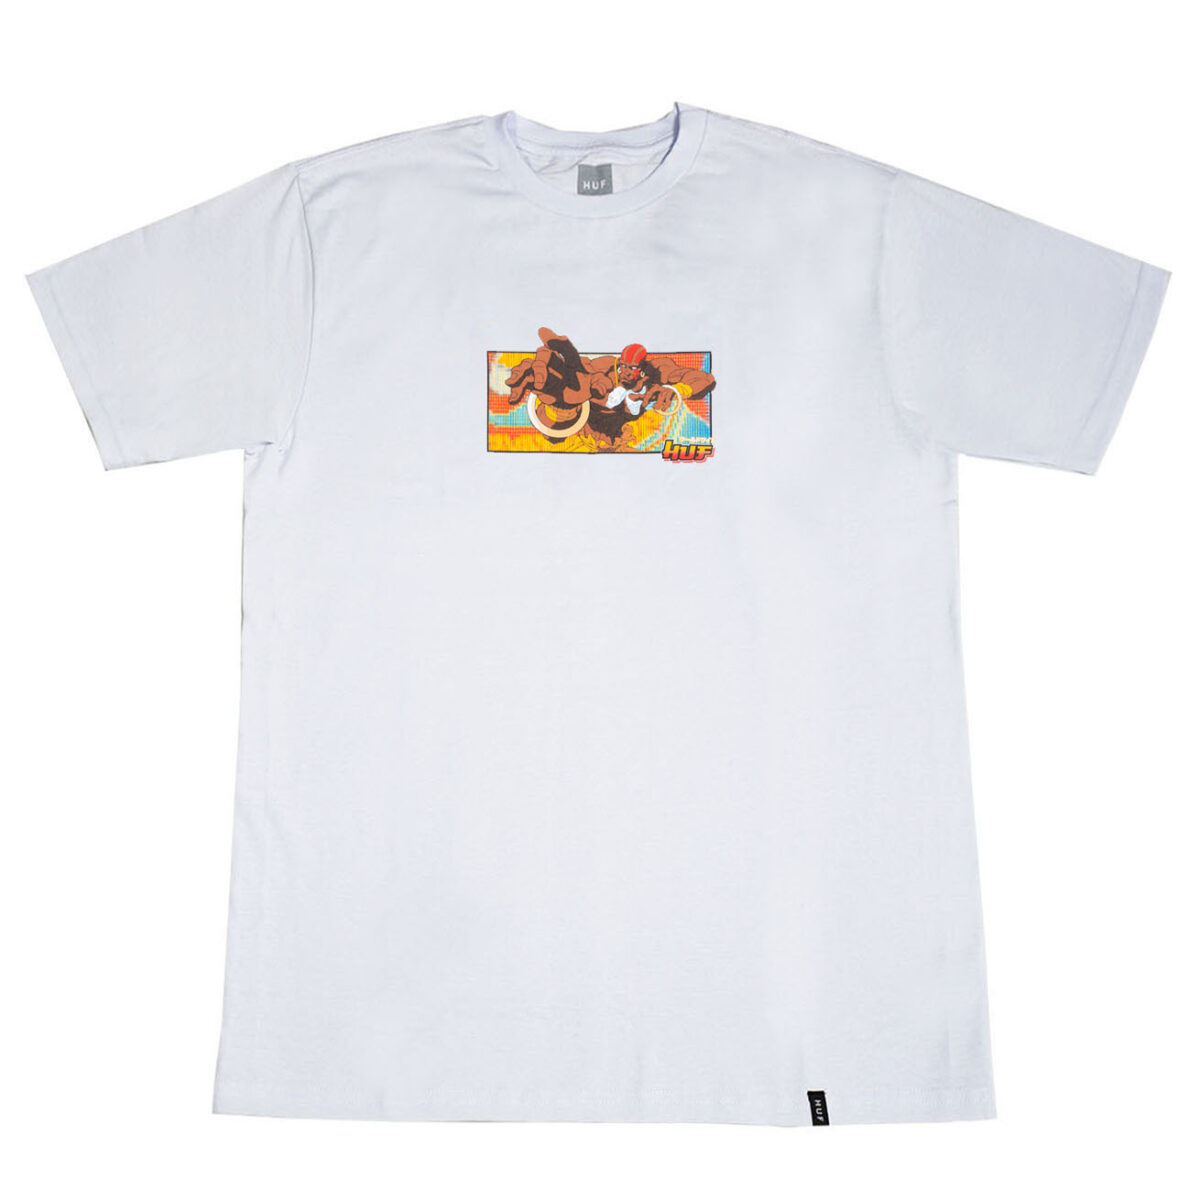 Camiseta Huf x Street Fighter Dhalsin White